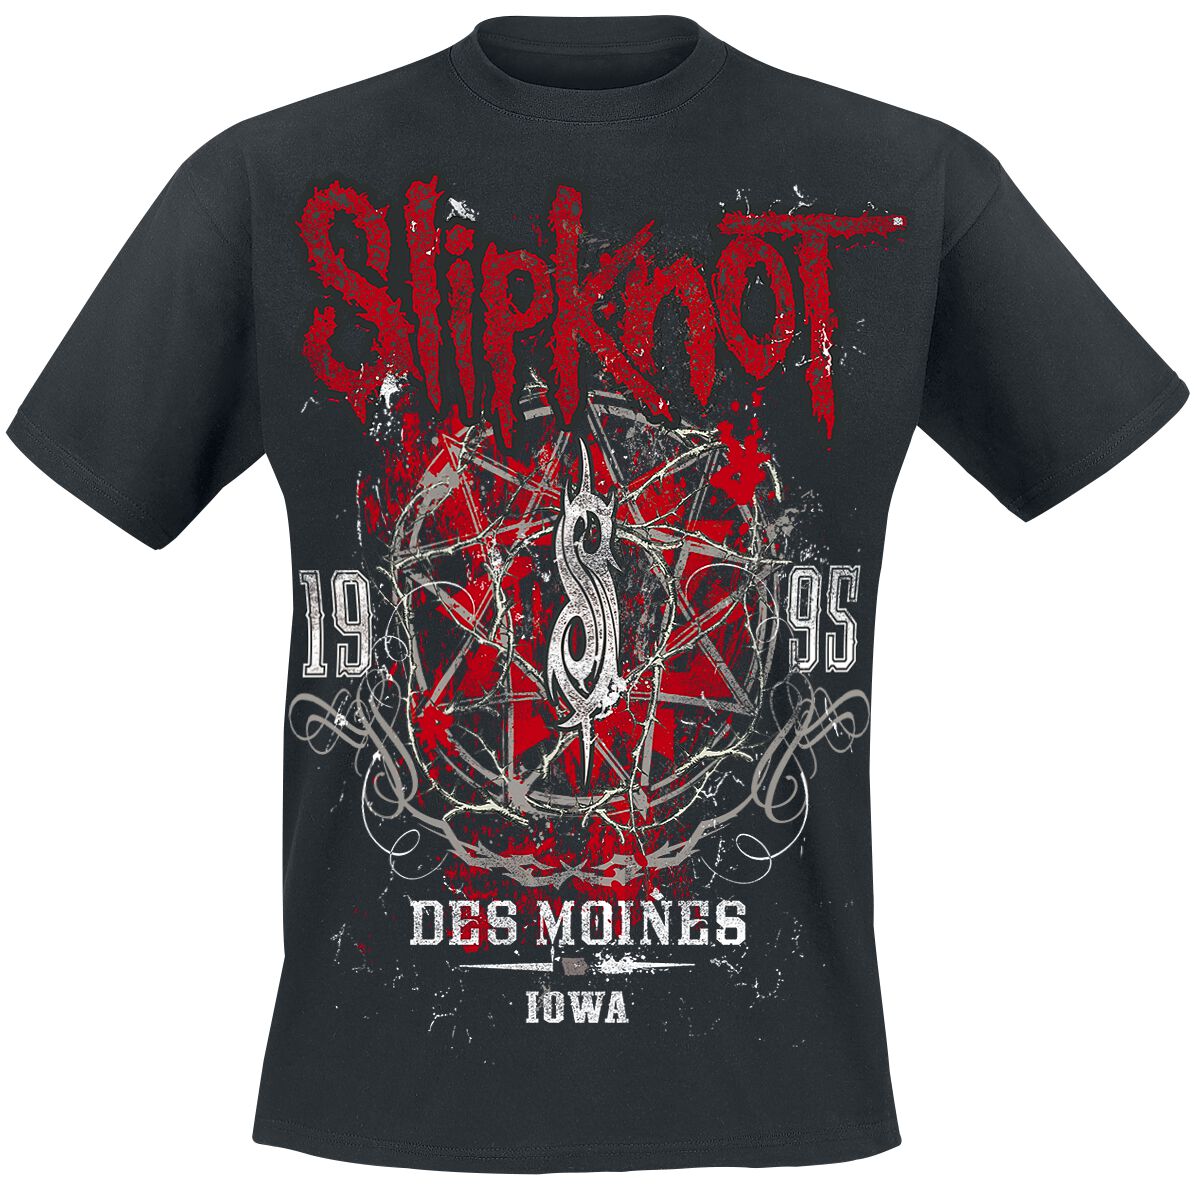 Slipknot T-Shirt - Iowa Star - S bis 5XL - für Männer - Größe 3XL - schwarz  - Lizenziertes Merchandise!